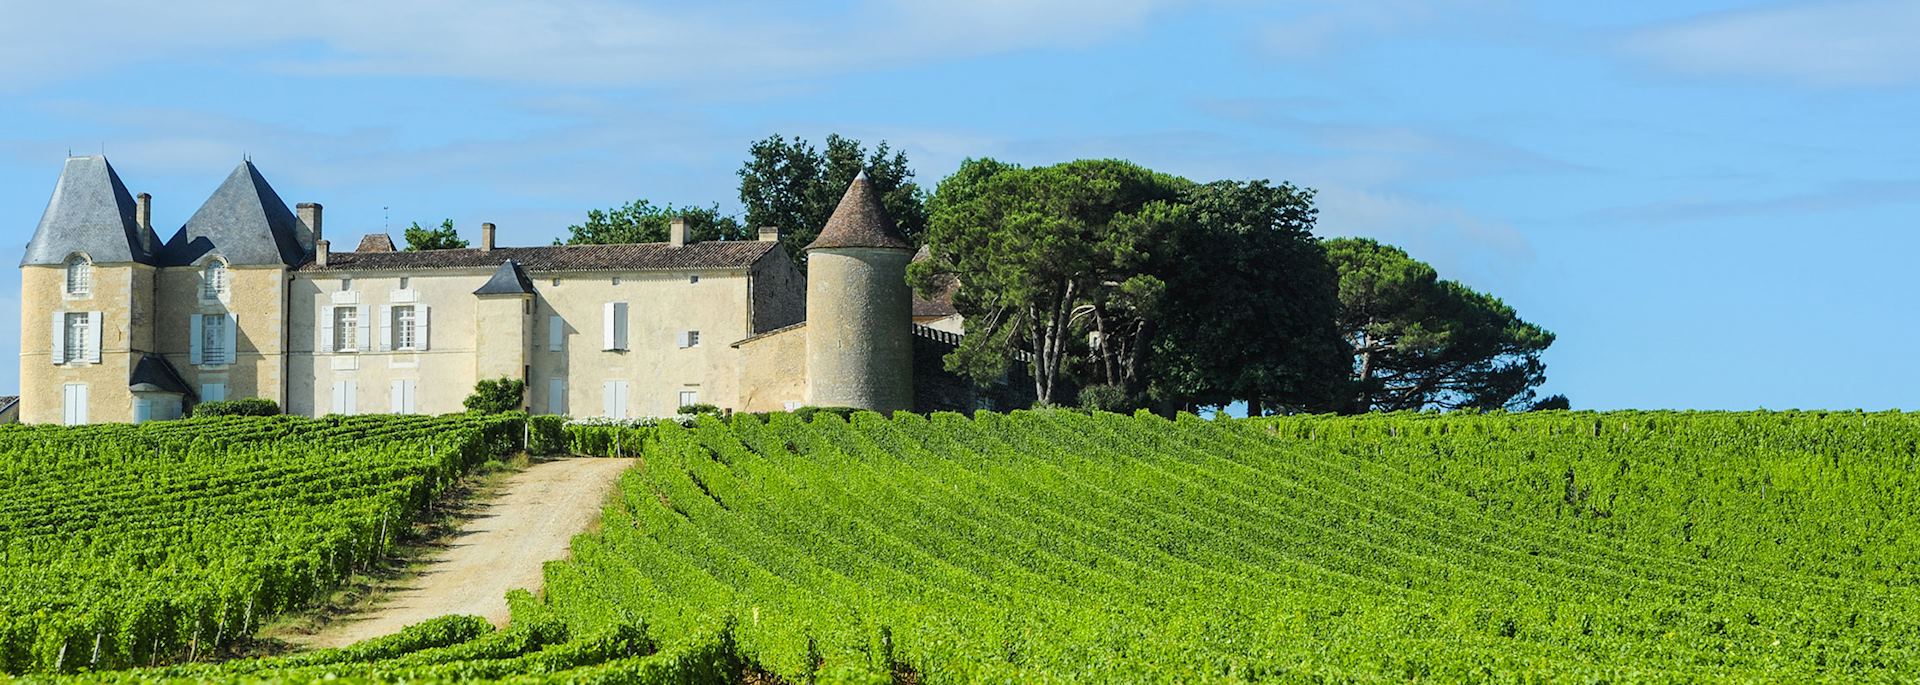 Château d'Yquem, Sauternes region